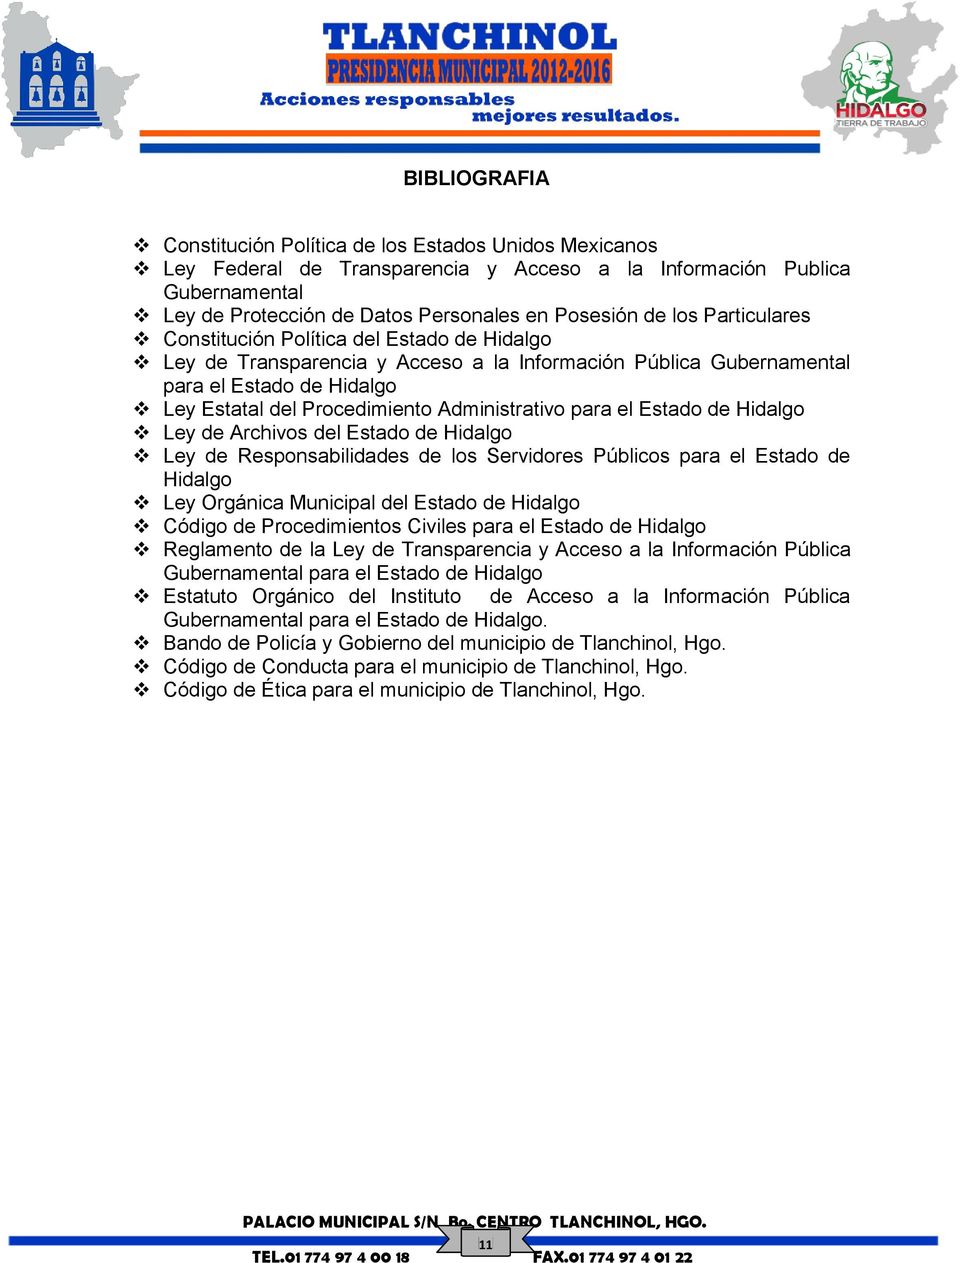 Administrativo para el Estado de Hidalgo Ley de Archivos del Estado de Hidalgo Ley de Responsabilidades de los Servidores Públicos para el Estado de Hidalgo Ley Orgánica Municipal del Estado de